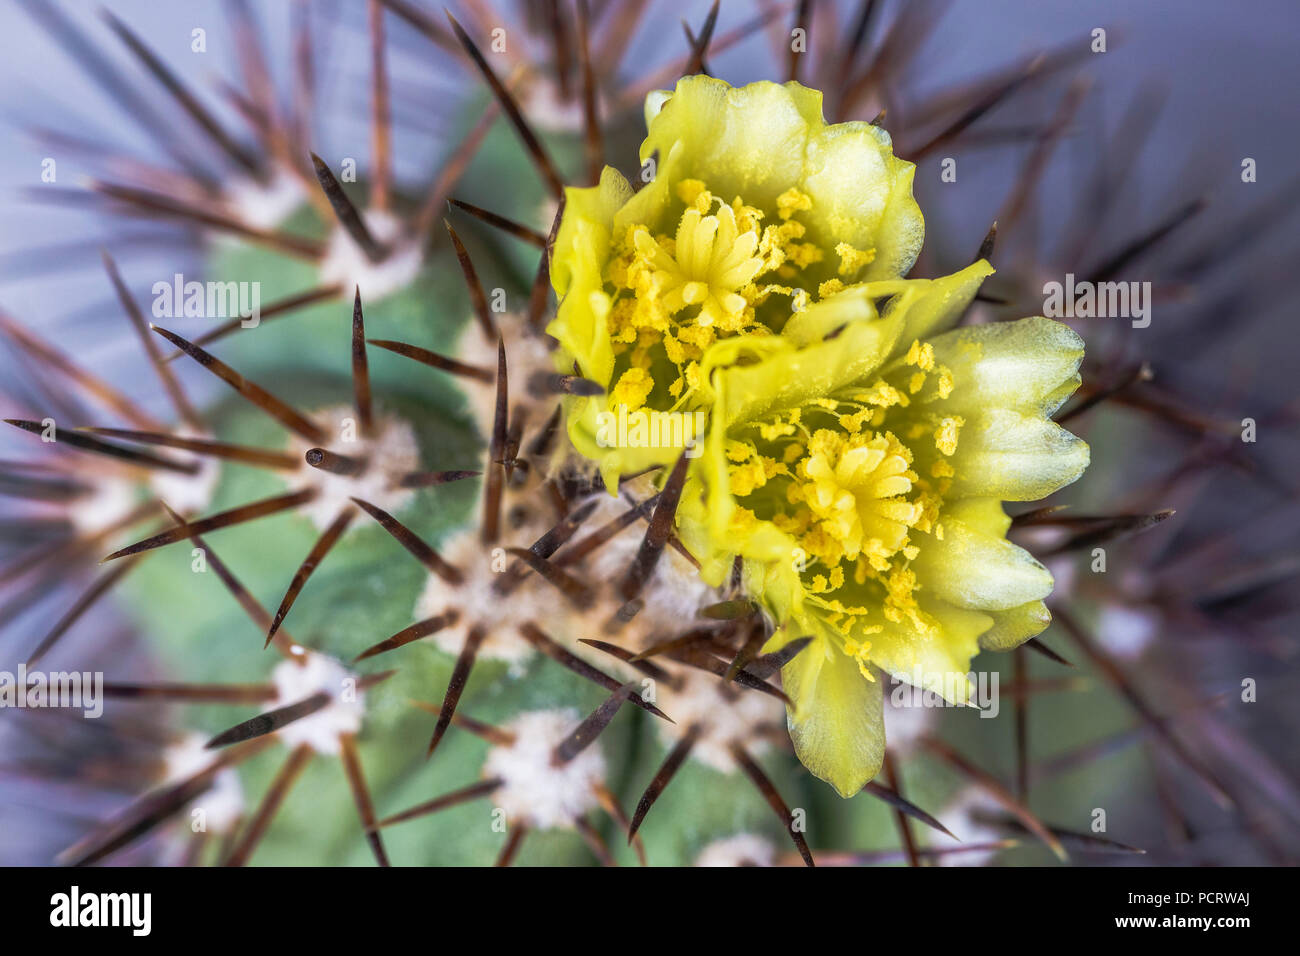 blooming cactus, Copiapoa marginata, medium close-up, Stock Photo